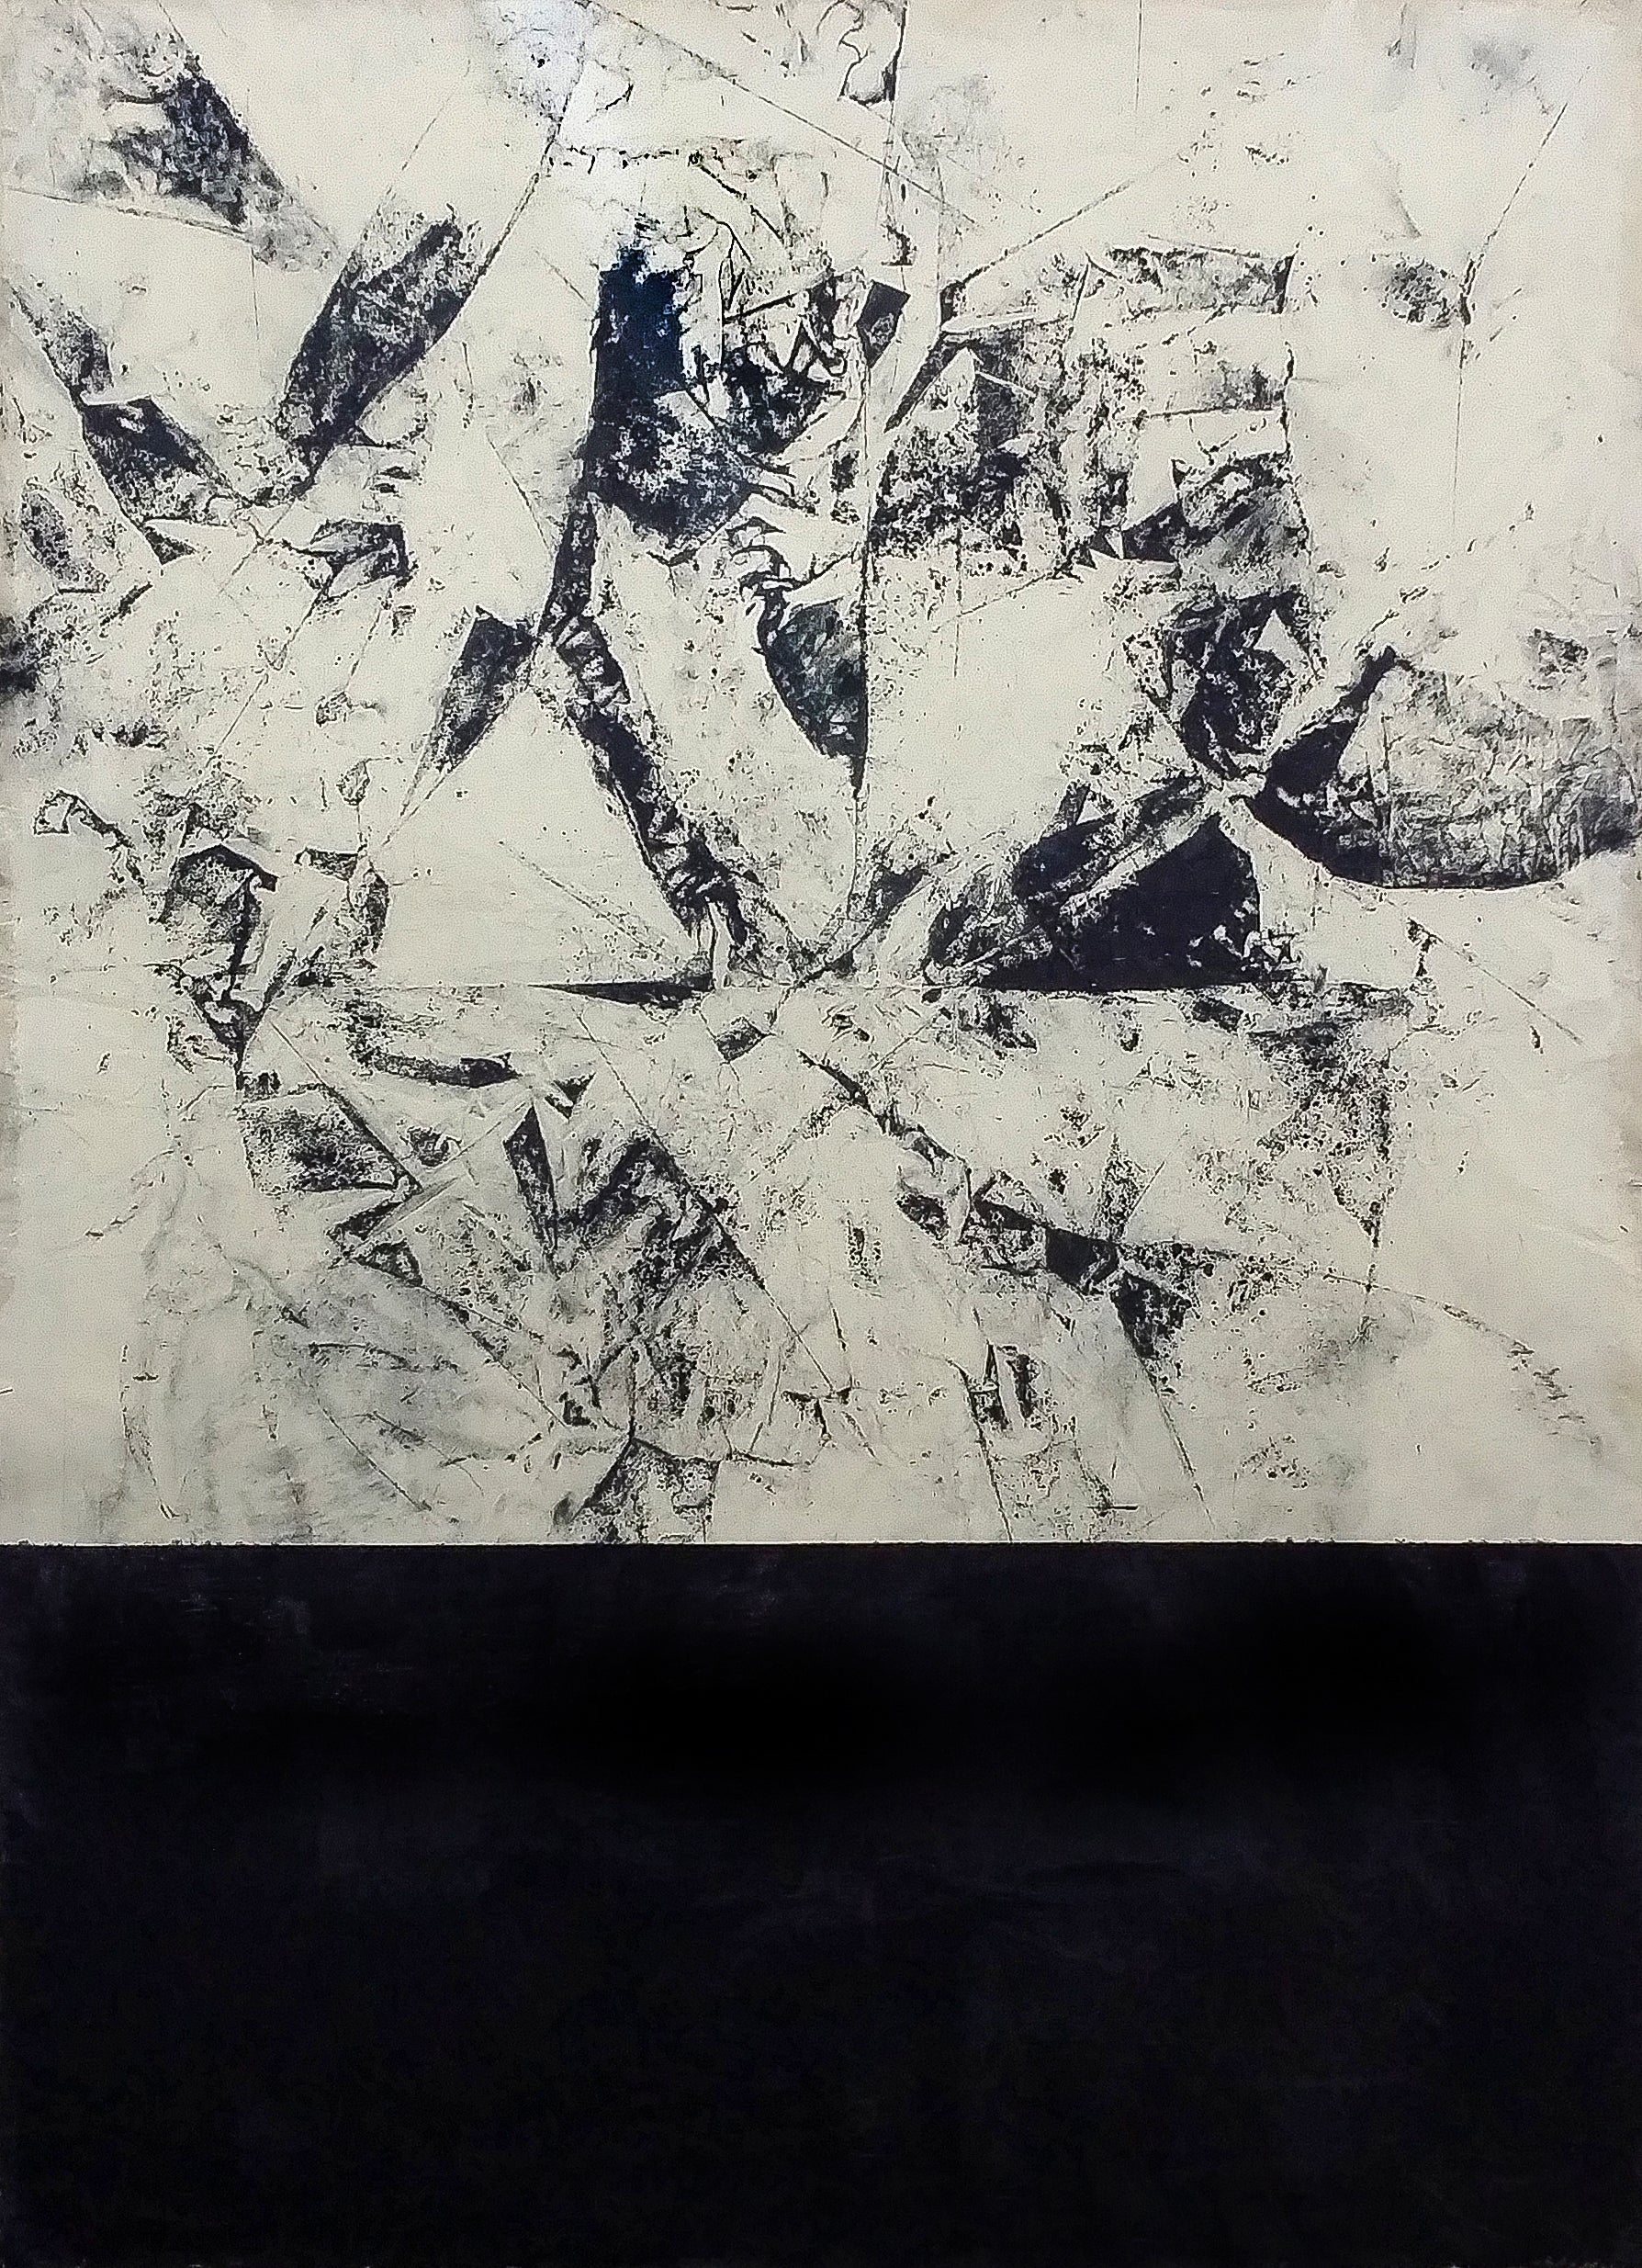 Retrouvez chez Acid Gallery les oeuvres de Marco Stefanucci, galerie d'art contemporain, Vieux Lille | Peinture acrylique et graphite sur toile Acrylics and graphite on canvas Dimensions140 x 190 cm Unique 2017